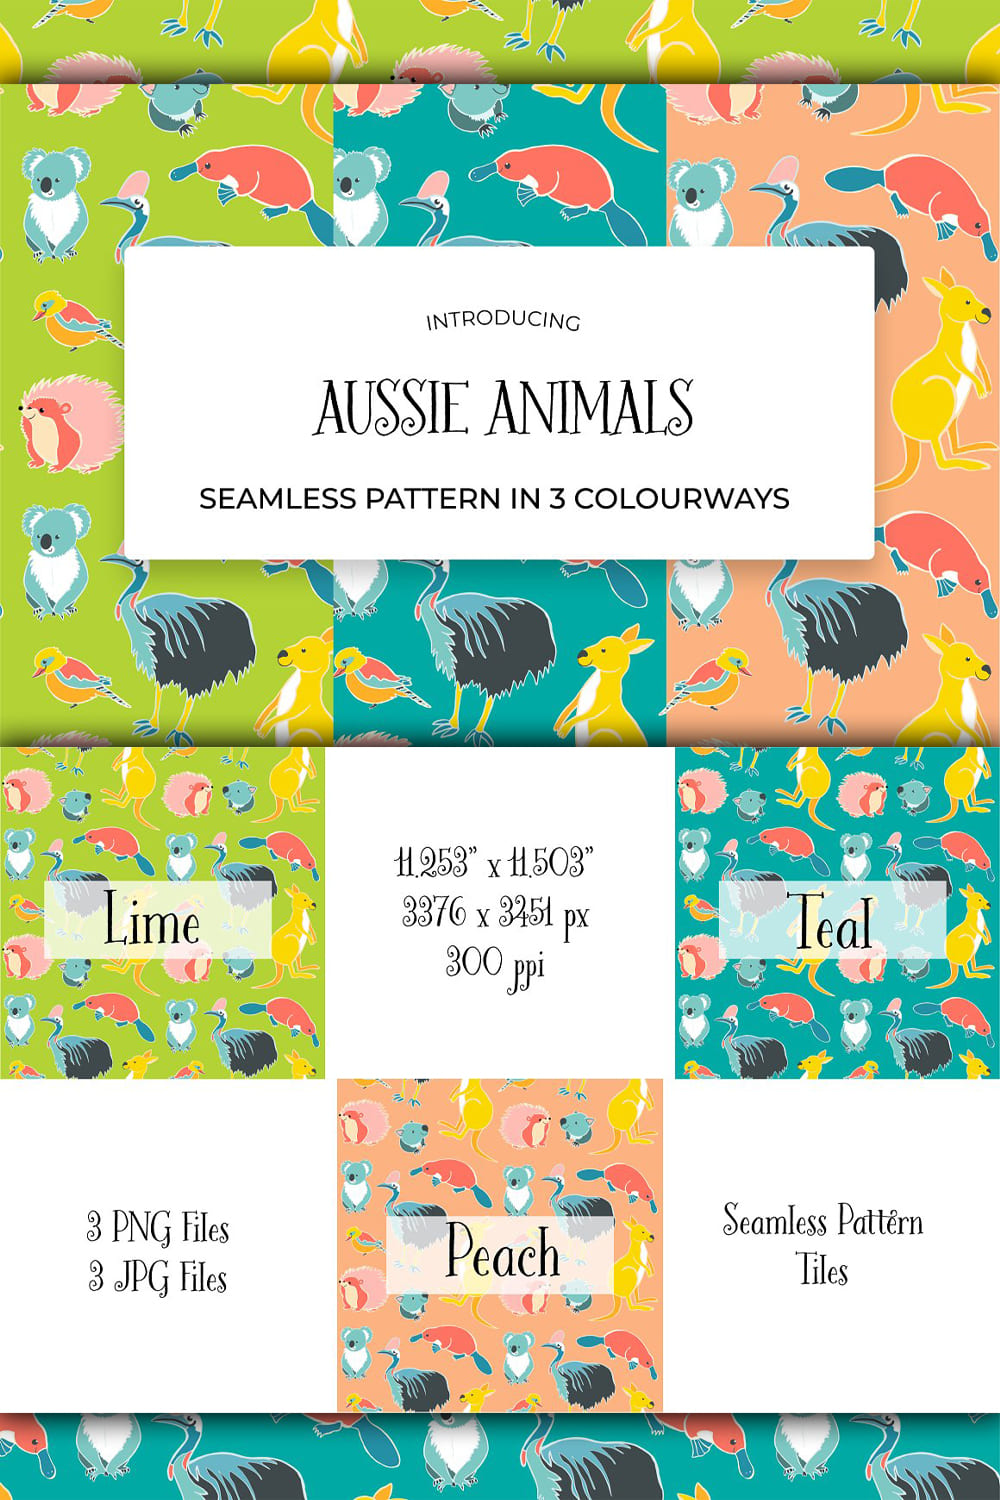 Aussie Animals Seamless Pattern - Pinterest.